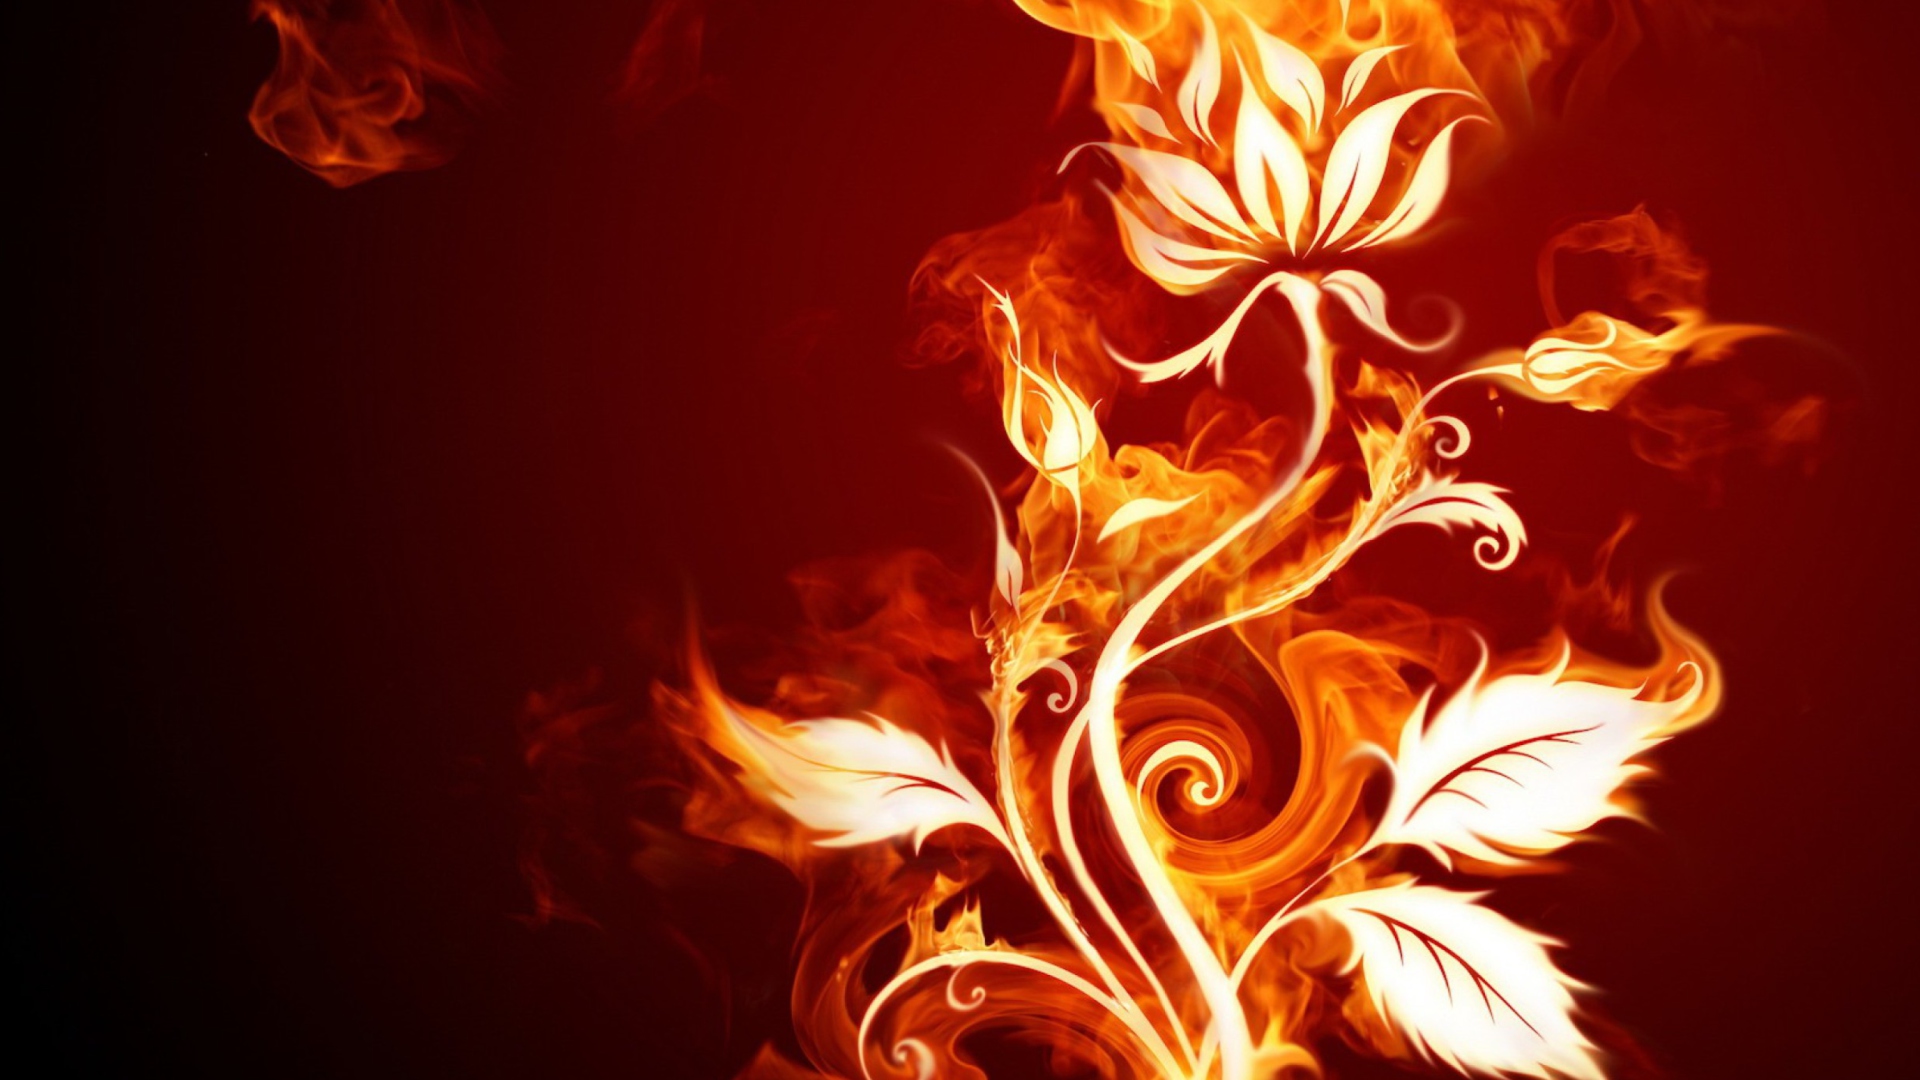 Fire Flower wallpaper 1920x1080